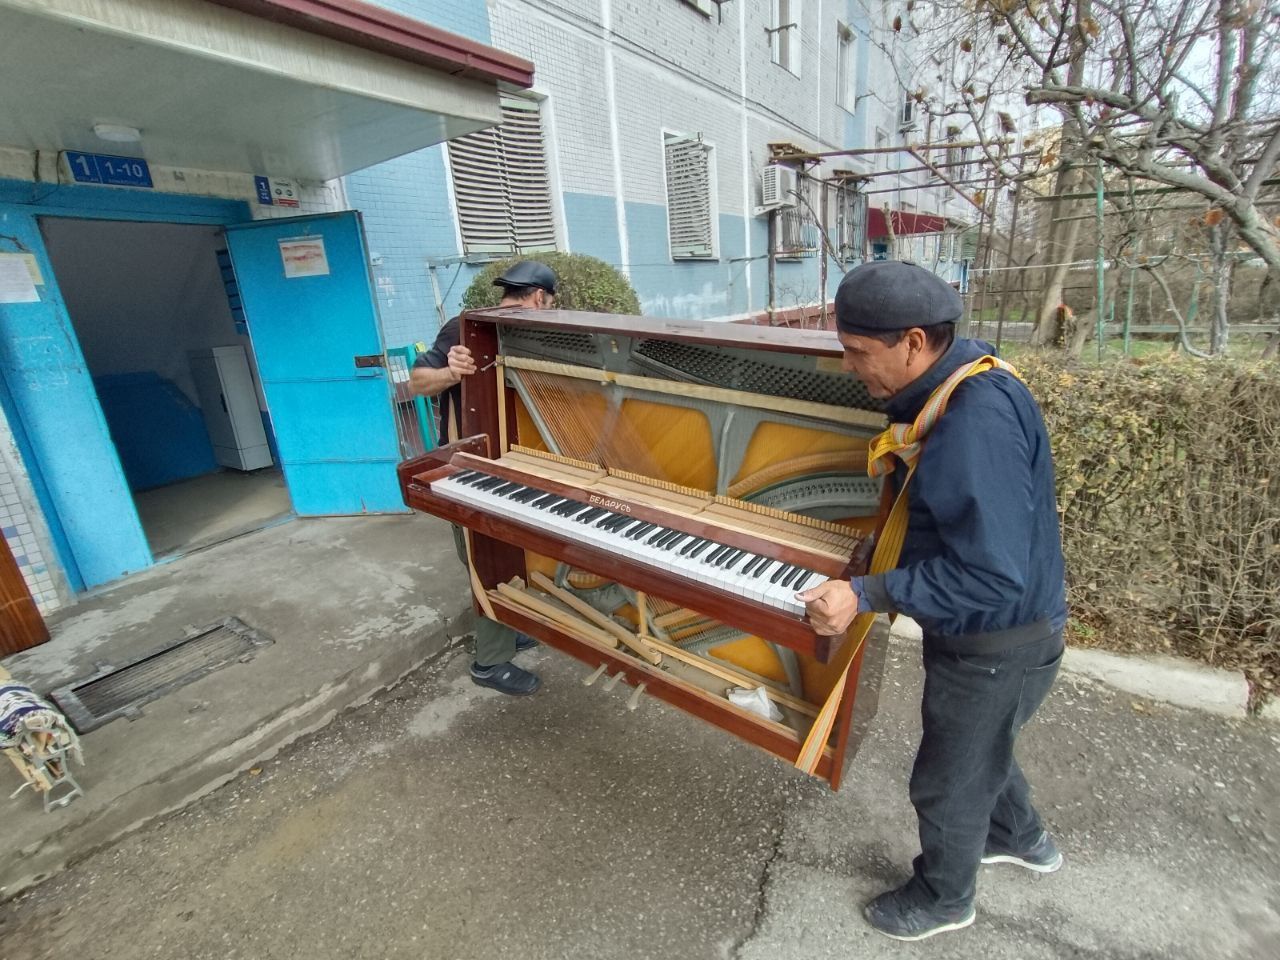 Yuk tashish piyanina перевозка пианино доставка пианино